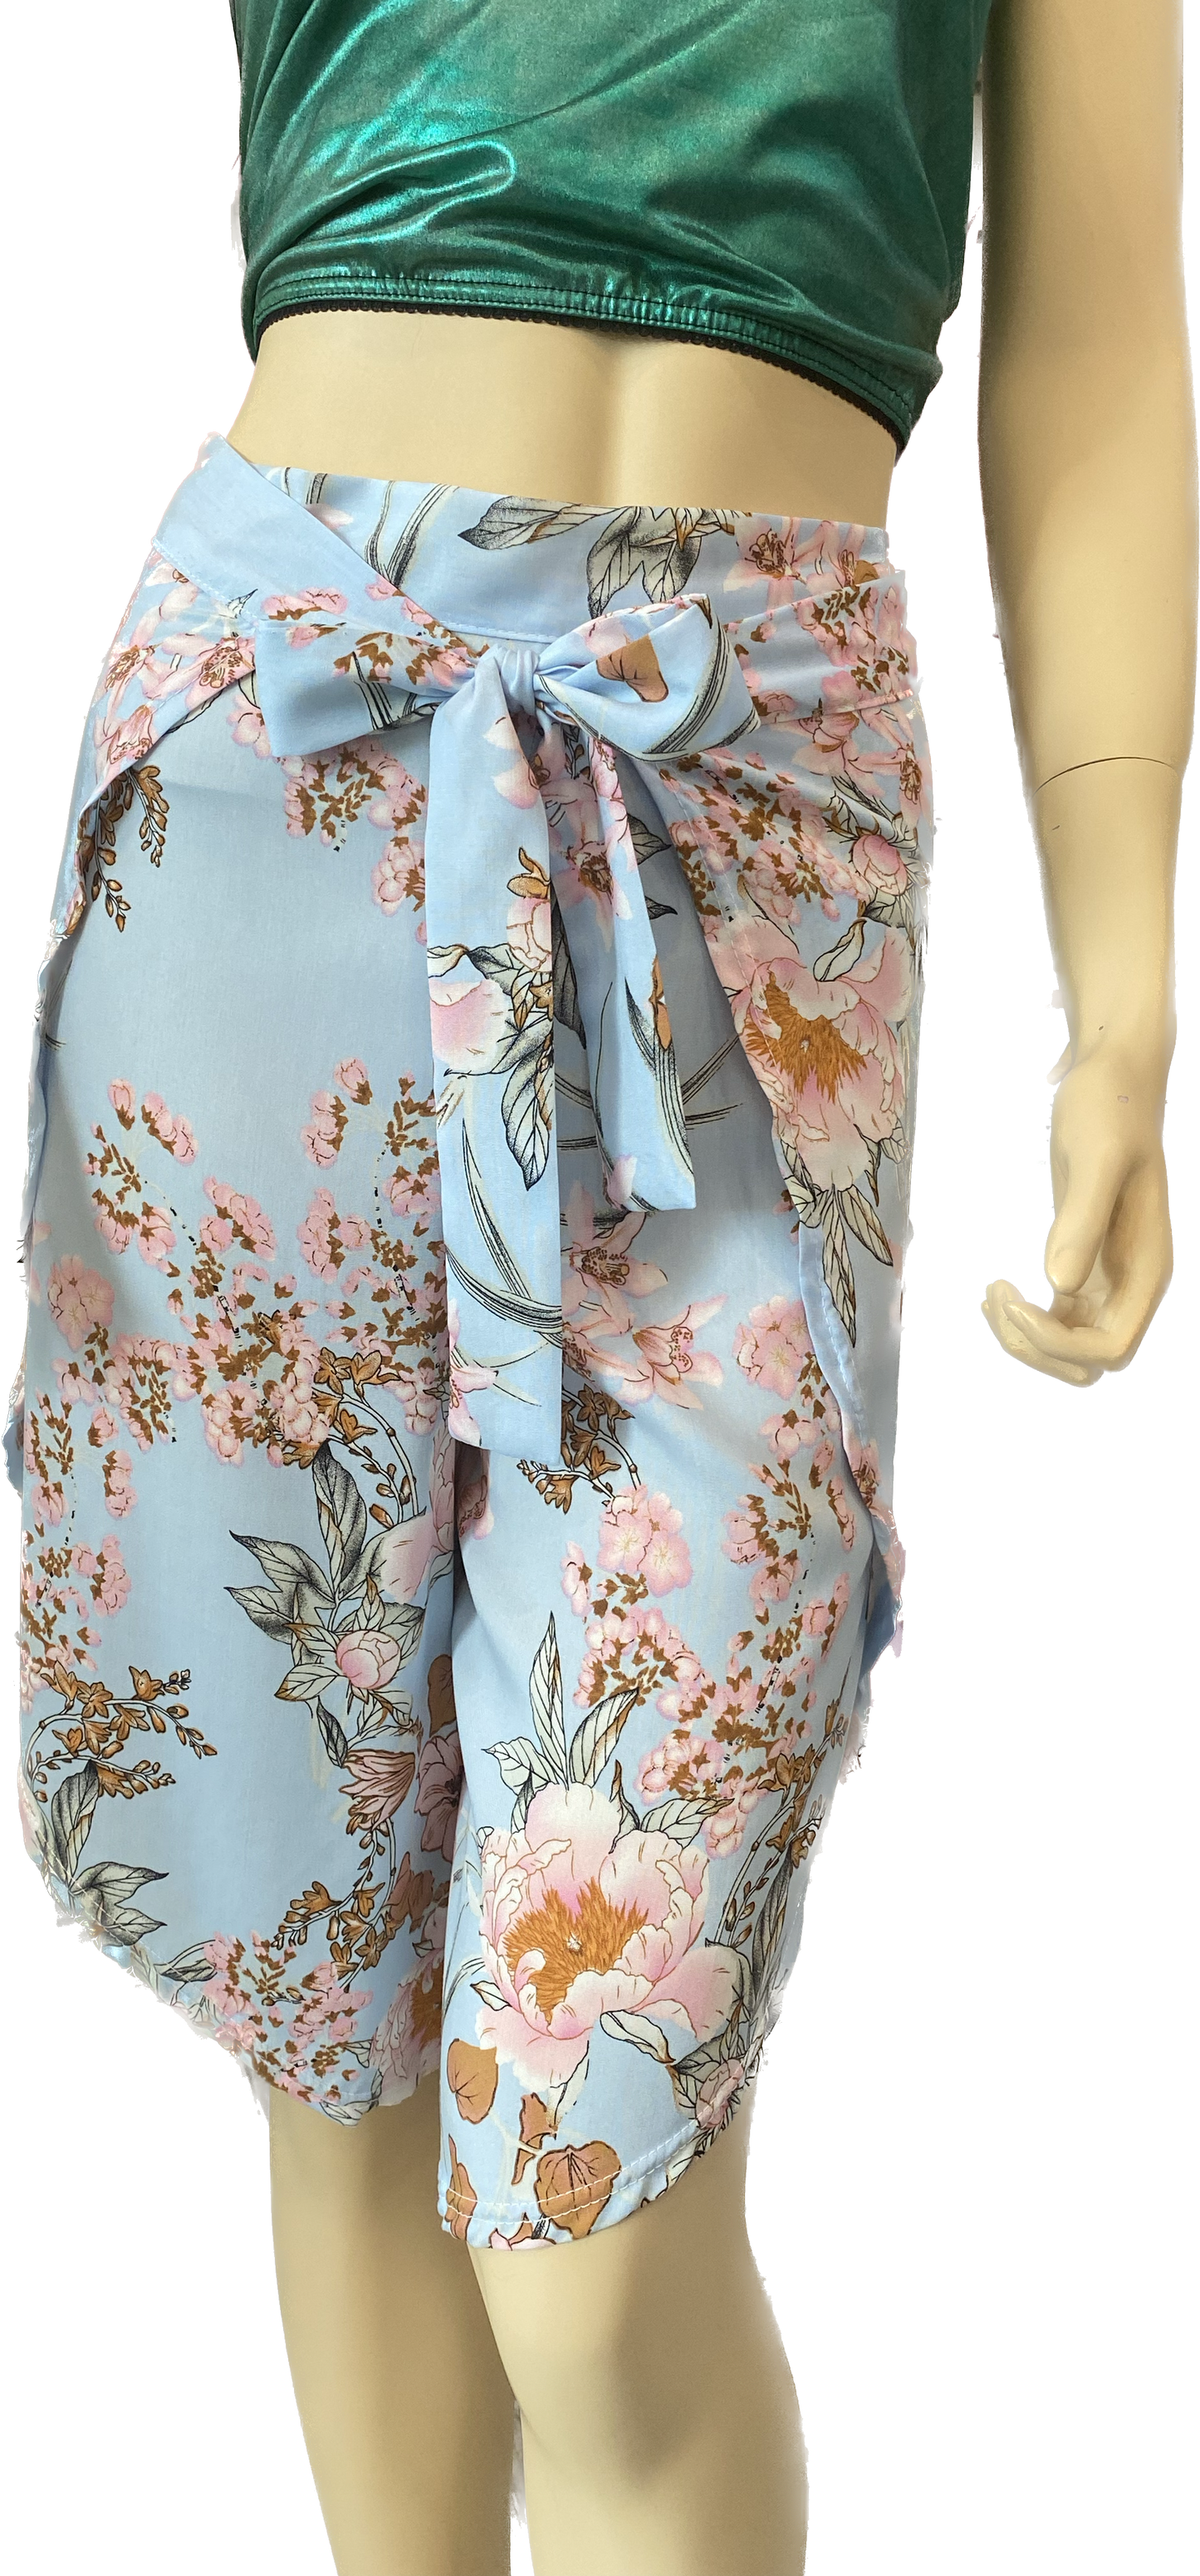 Rövid átlapolós nadrág-virág minta